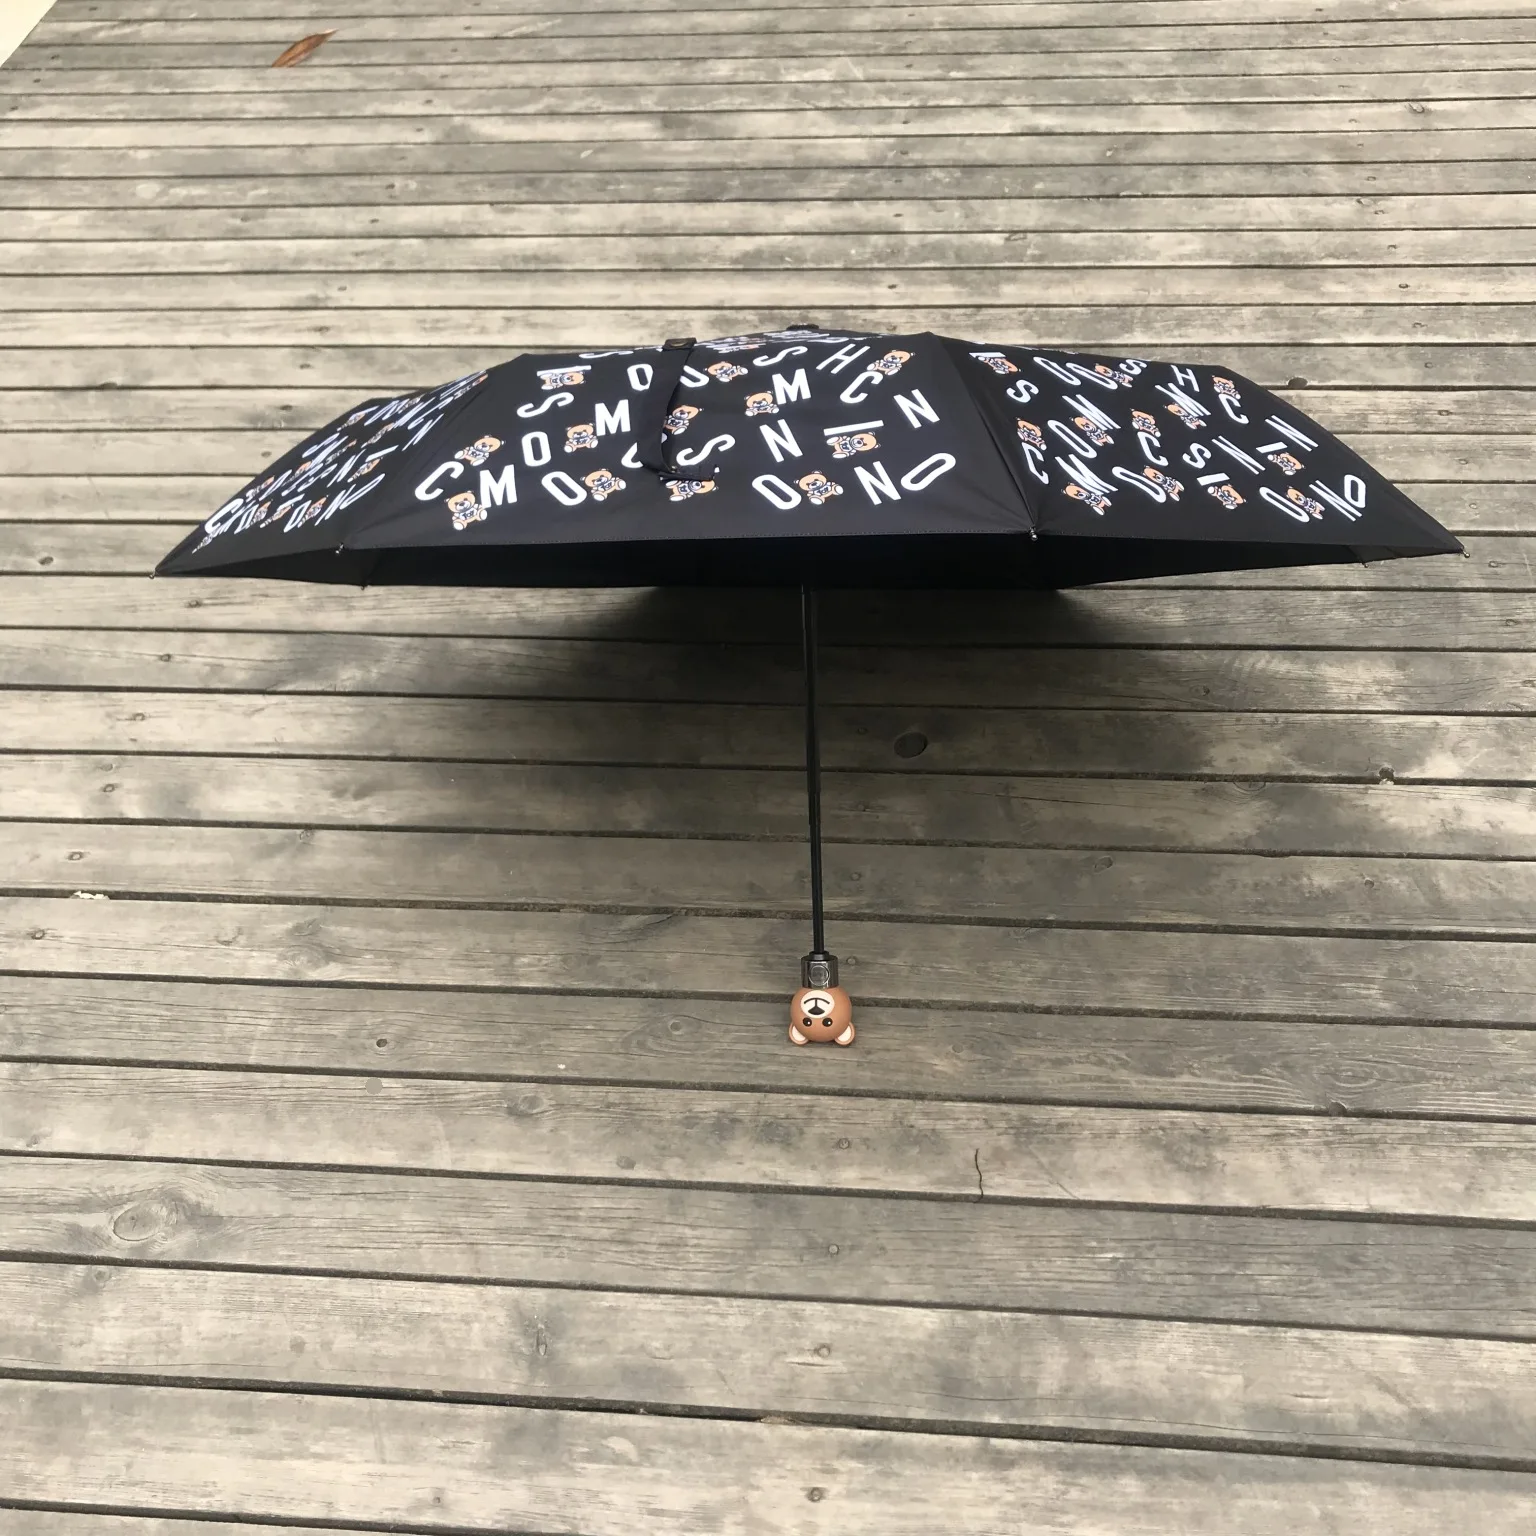 

Большой модный брендовый Зонт с головой медведя, персональный зонт, полностью автоматический складной зонт от солнца, солнца и дождя, зонт д...